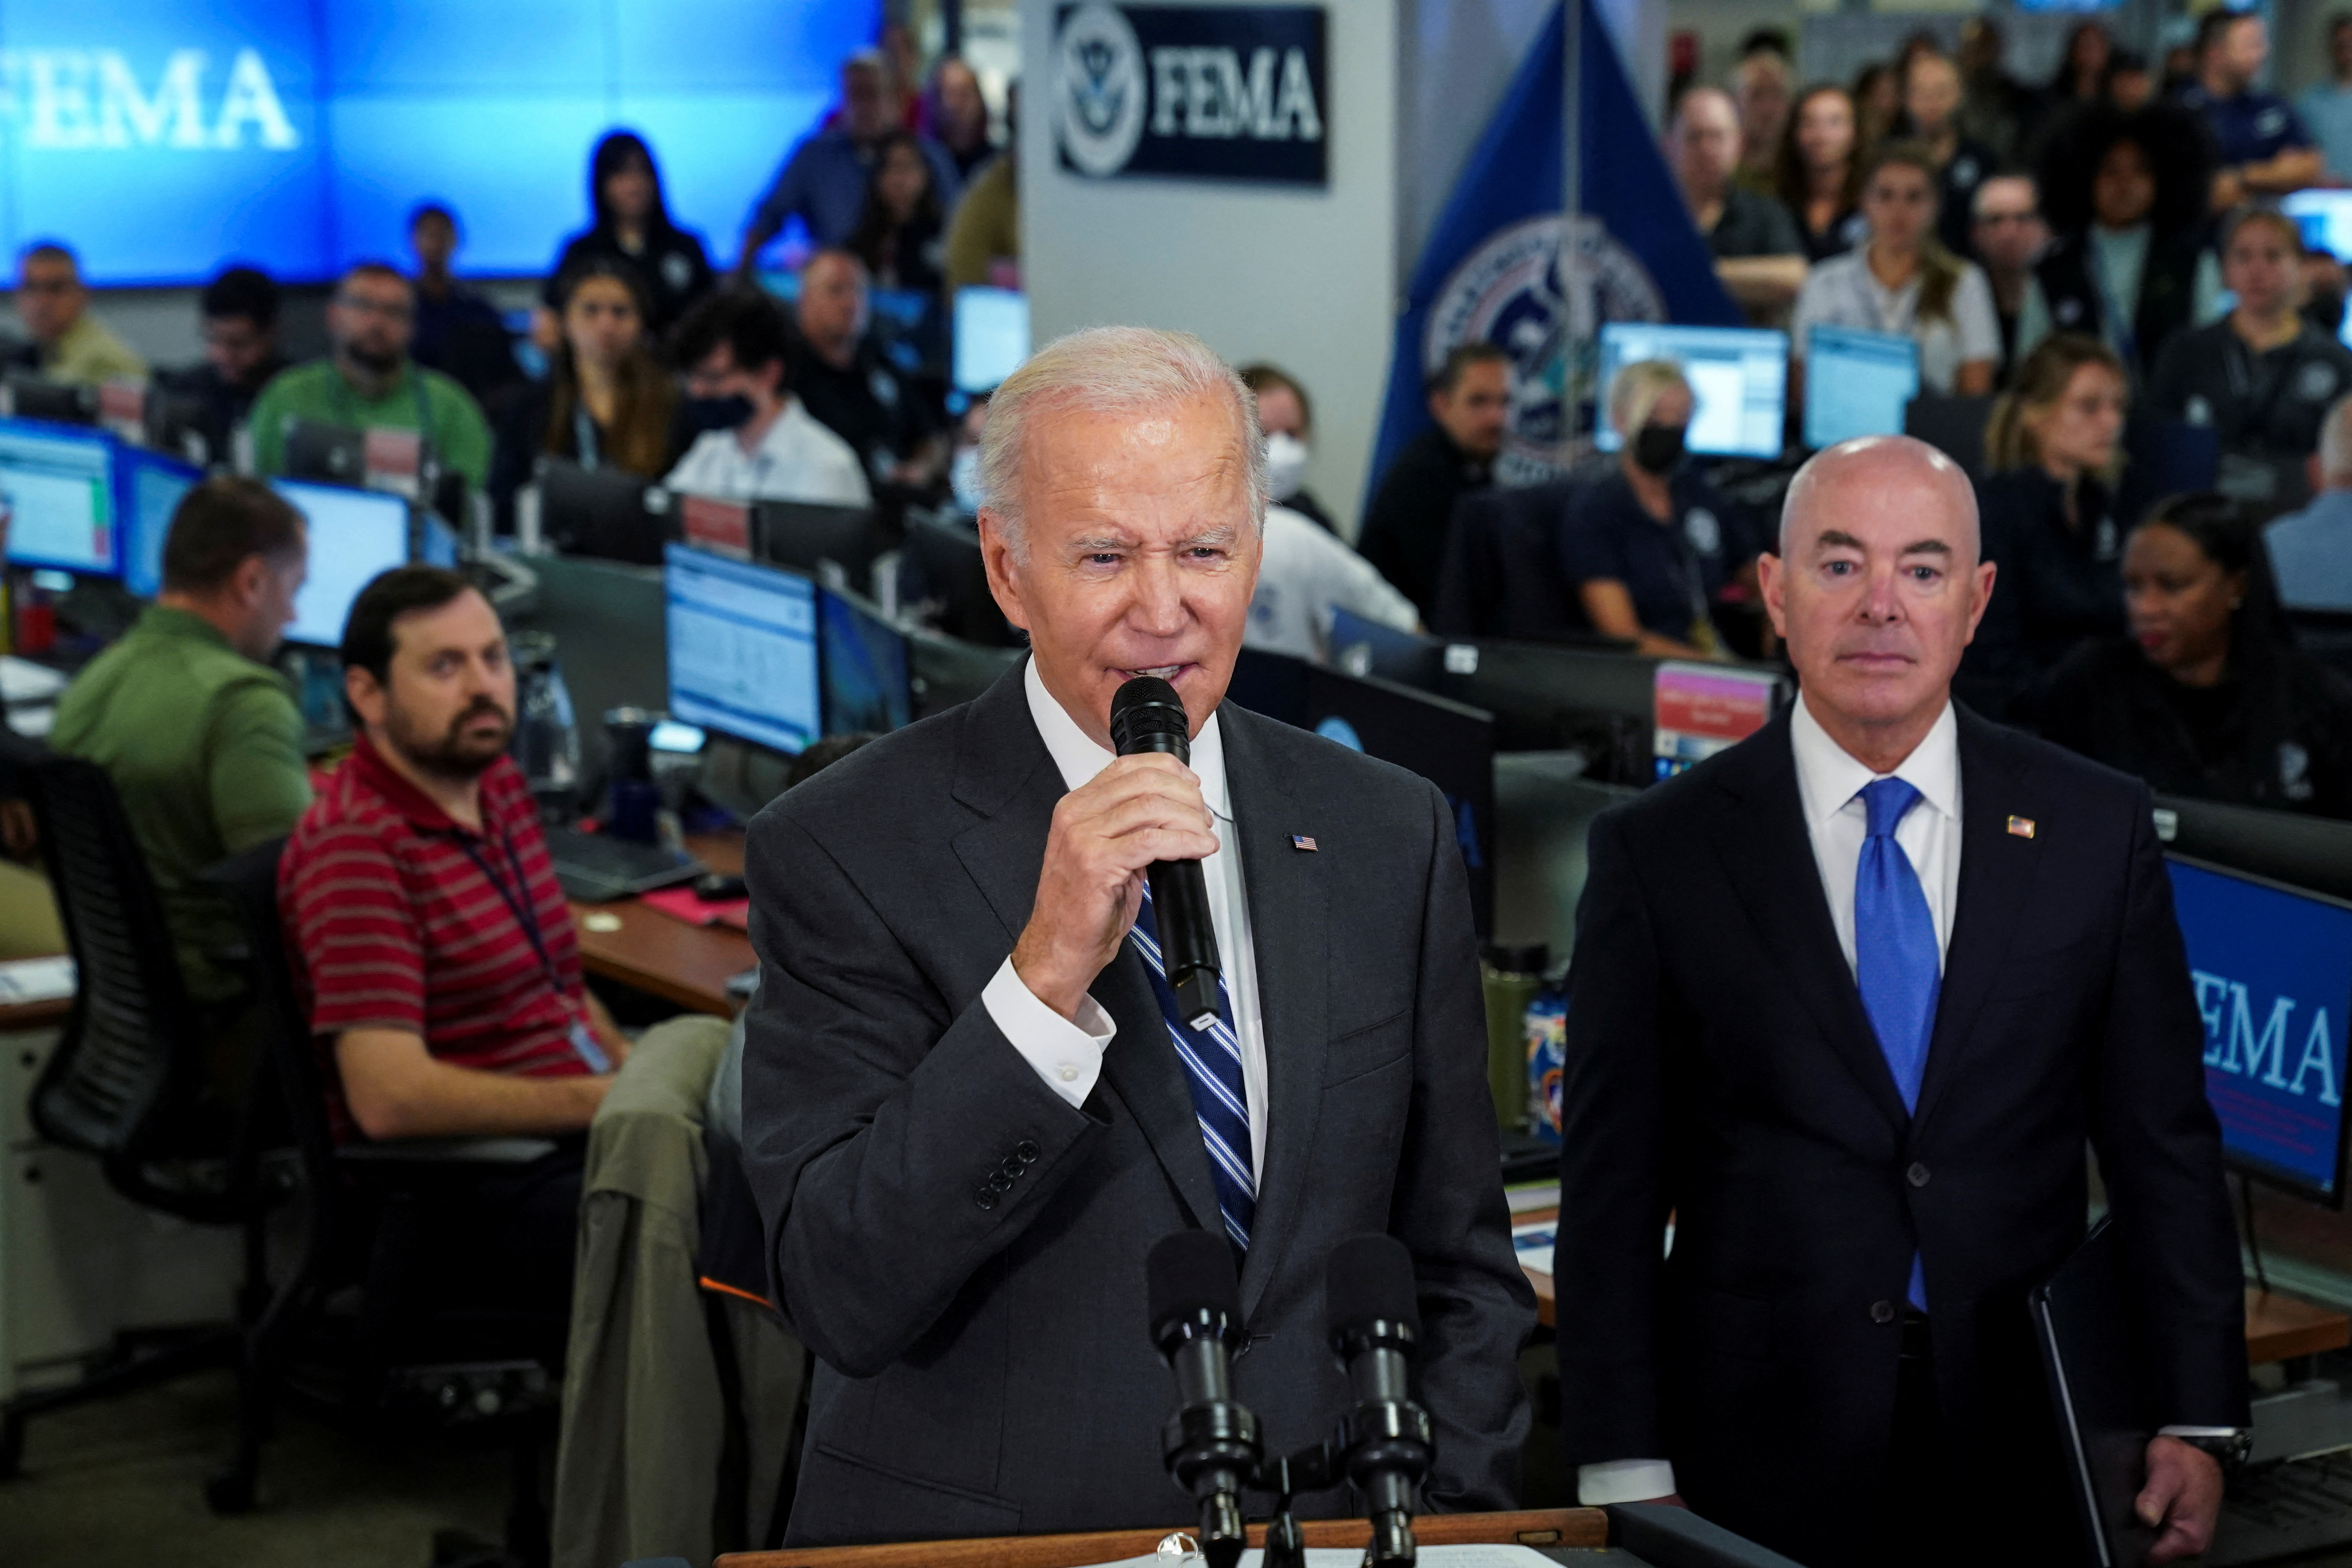 El presidente de EEUU, Joe Biden, habló en la sede de FEMA junto con el secretario del Departmento de Seguridad Interior (DHS), Alejandro Mayorkas. (REUTERS/Kevin Lamarque)